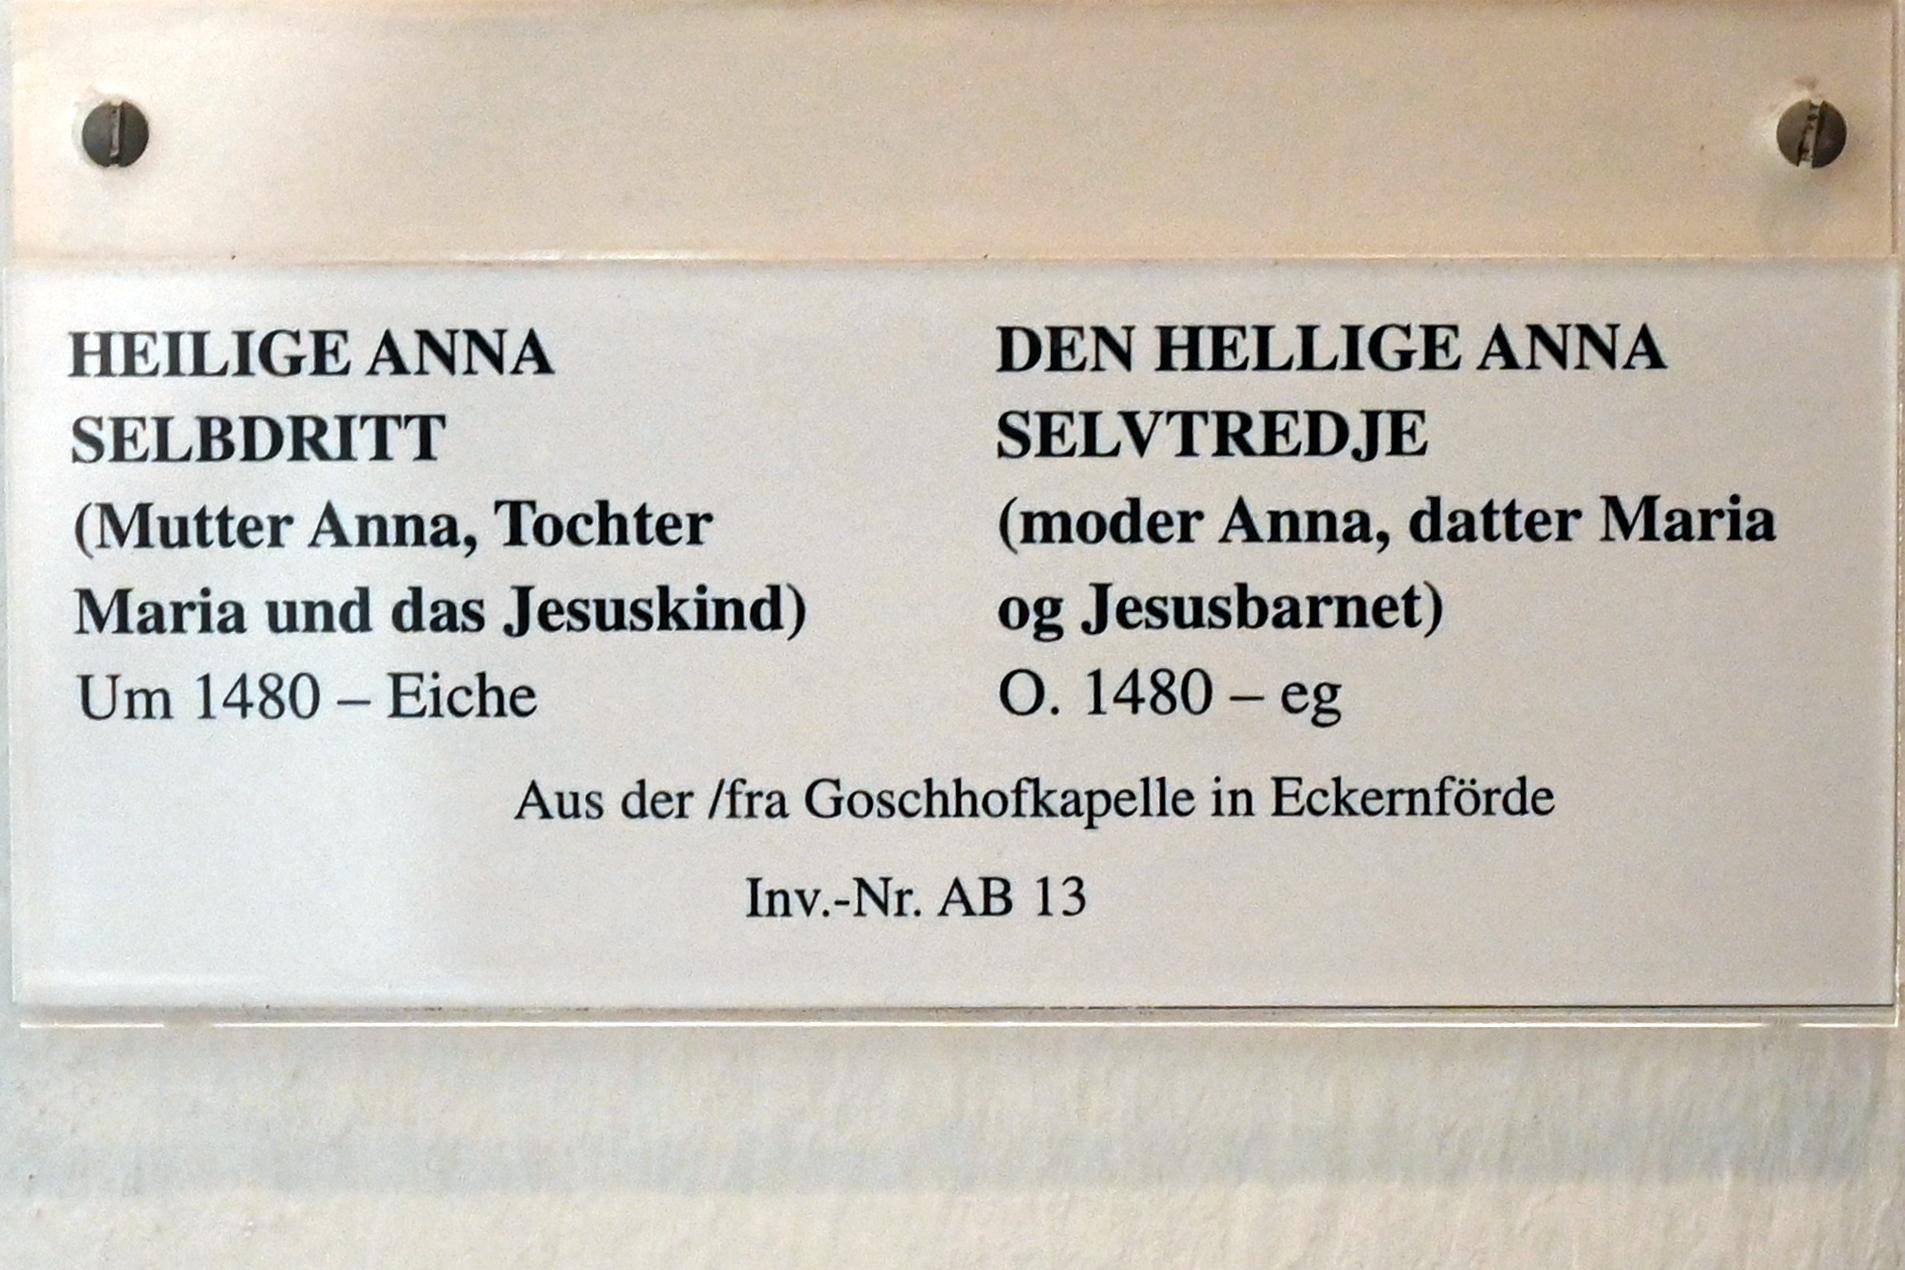 Heilige Anna Selbdritt, Eckernförde, Goschhof, jetzt Schleswig, Landesmuseum für Kunst und Kulturgeschichte, Saal 1, um 1480, Bild 3/3